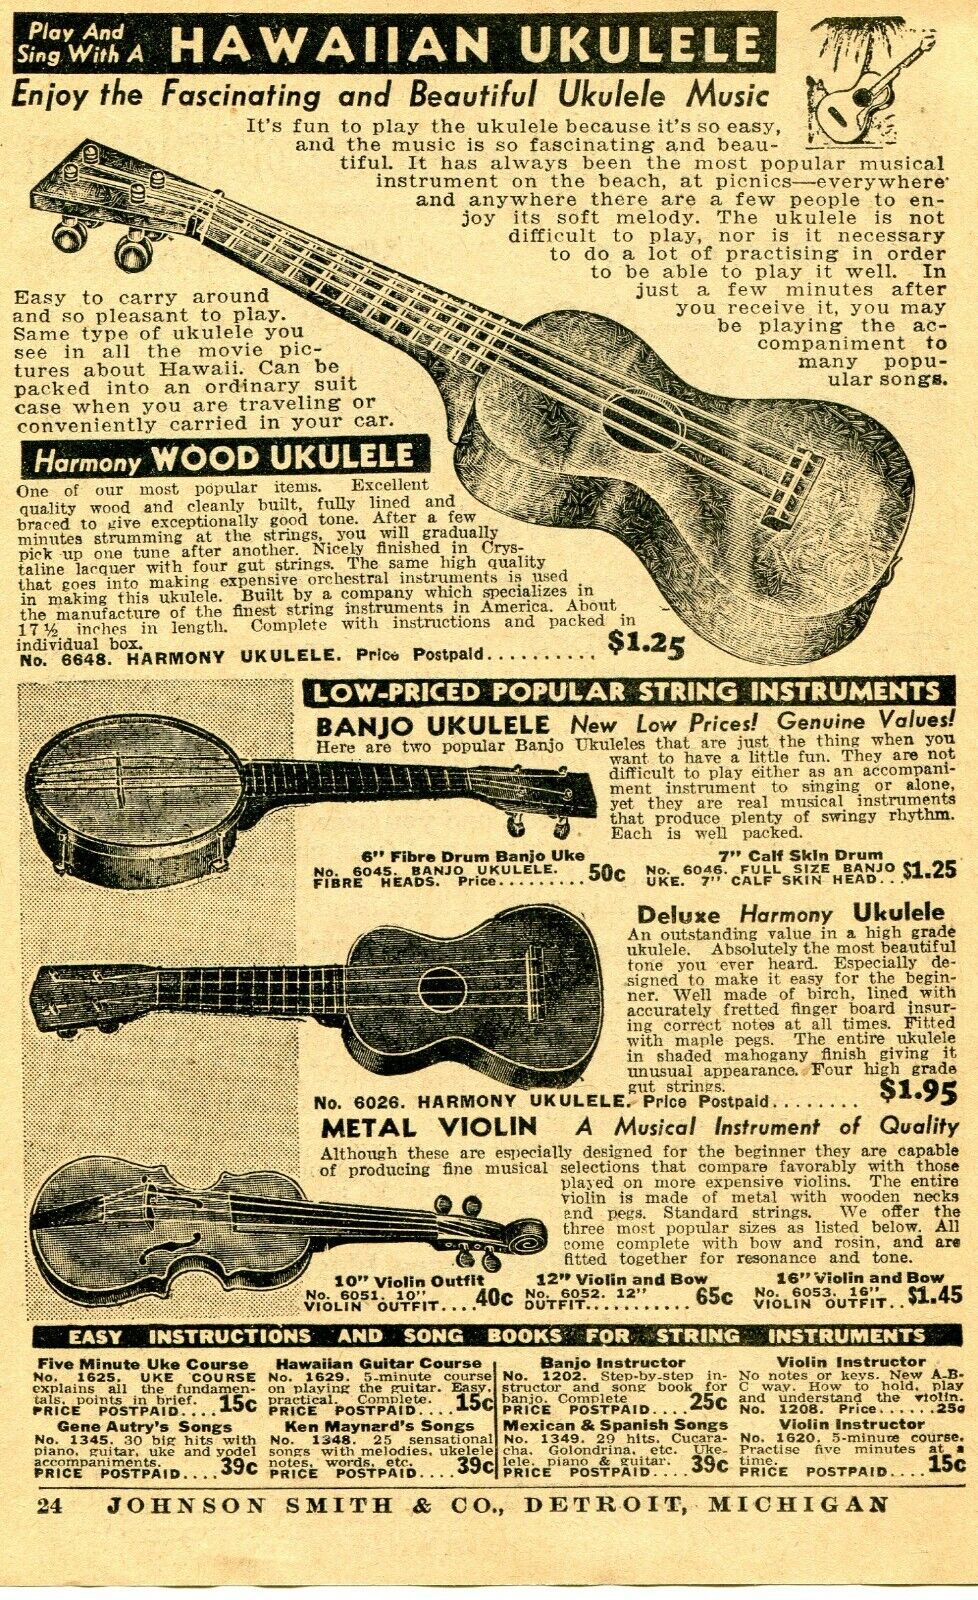 1938 small Print Ad of Hawaiian Ukulele, Deluxe Harmony & Banjo Ukulele